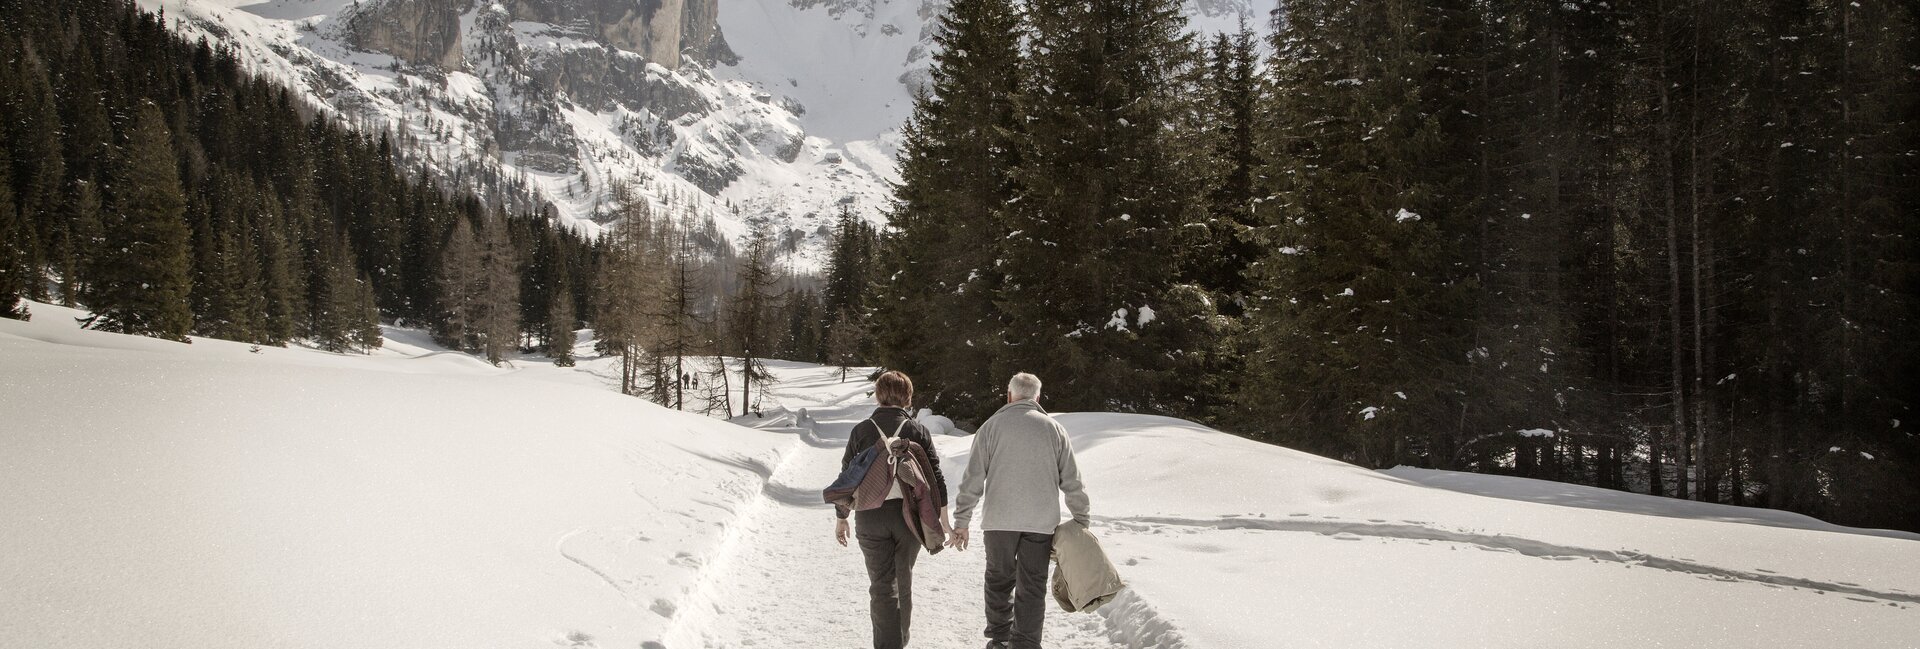 San Martino di Castrozza - Val Venegia - Passeggiata nella neve
